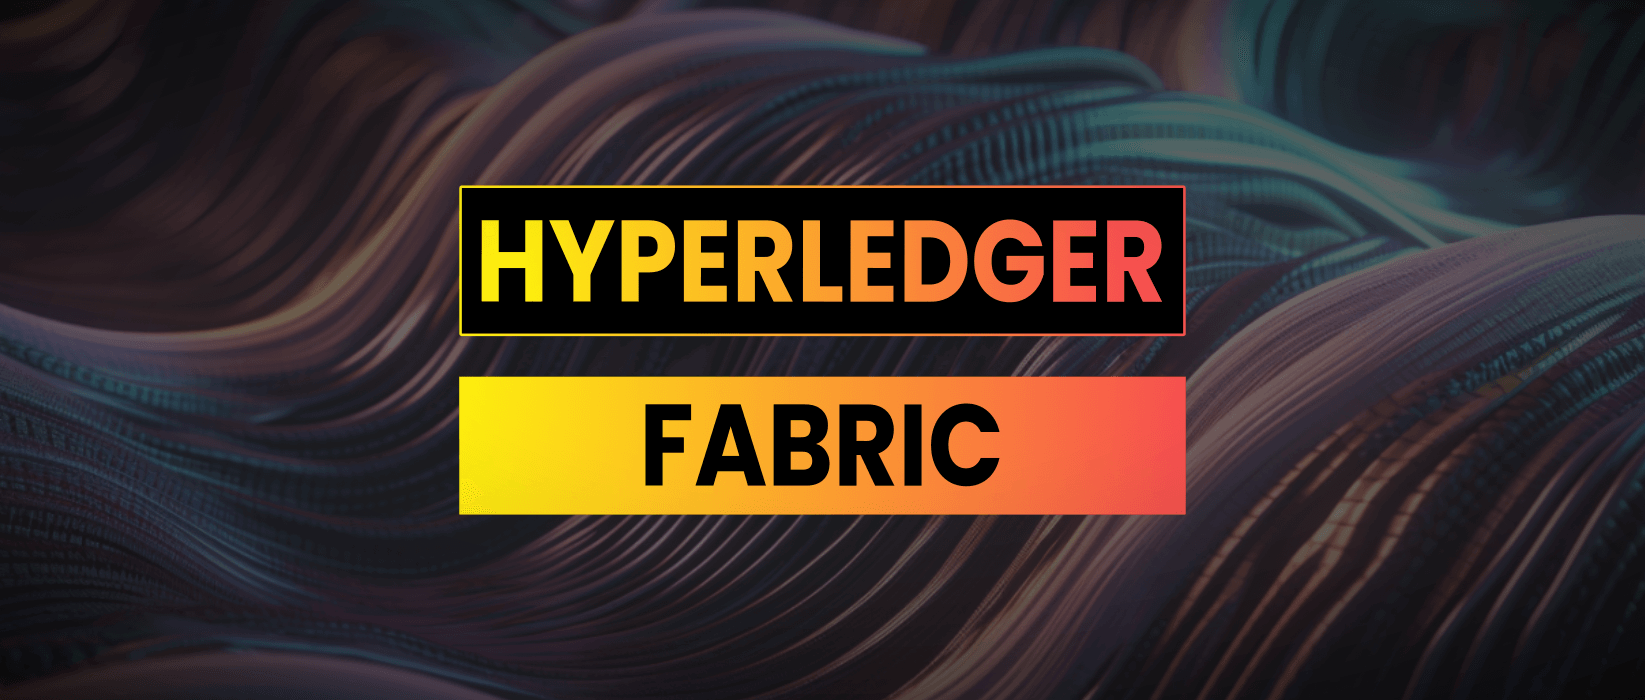 Hyperledger Fabric | IBM’s Enterprise Blockchain